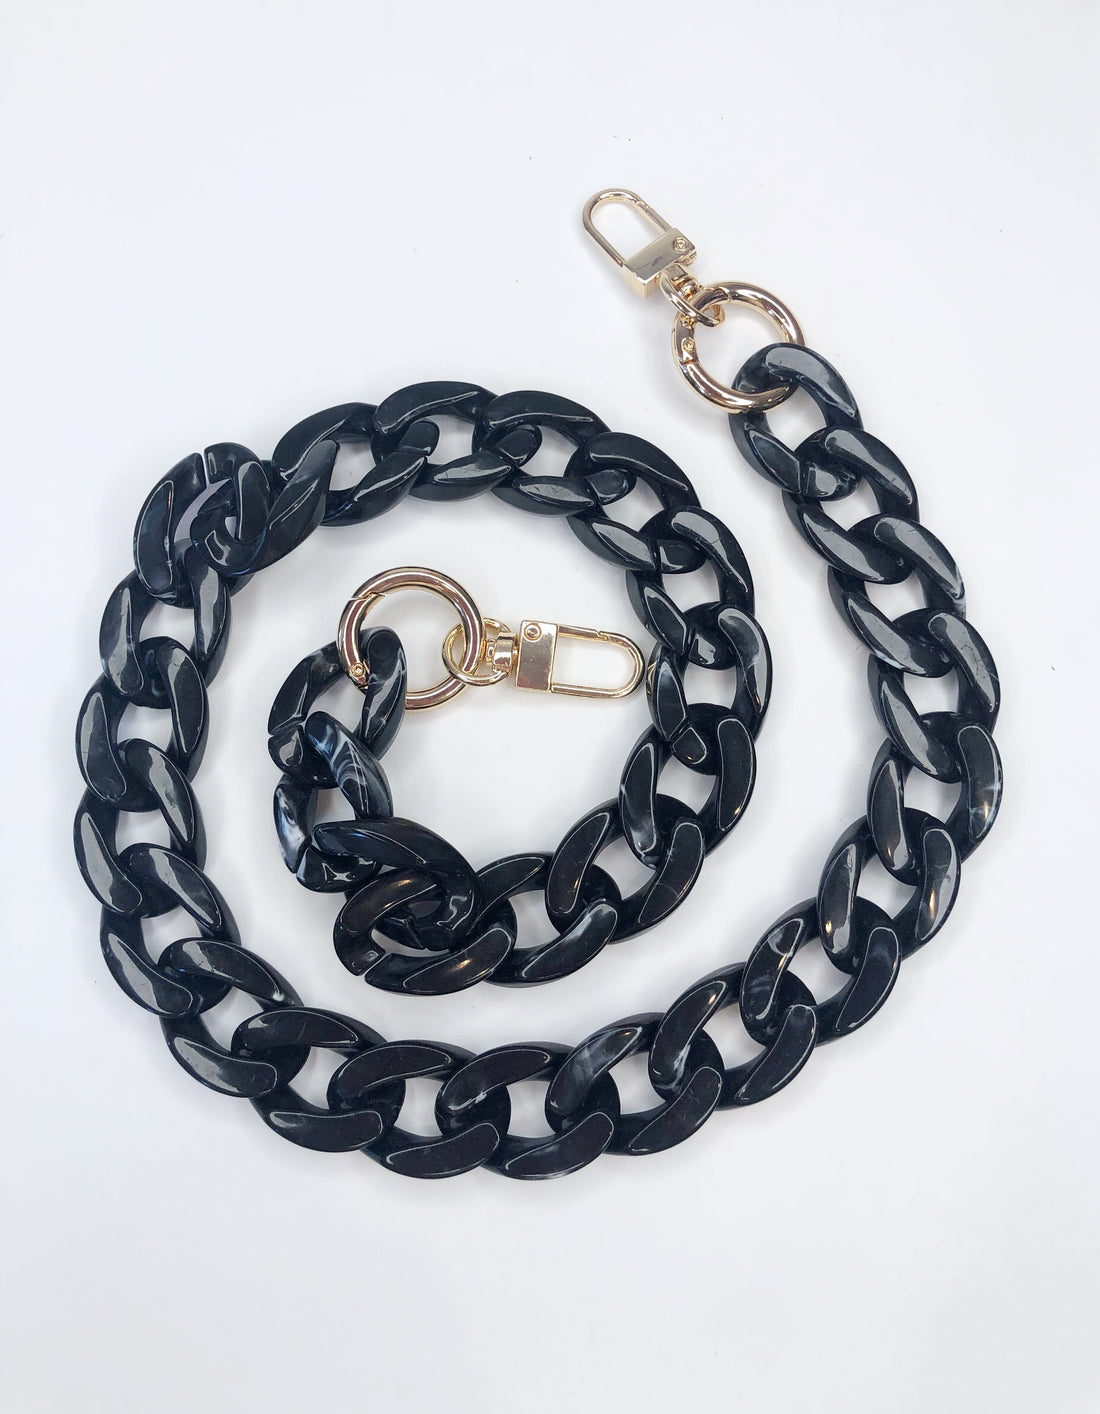 Aiden Convertible Black Curb Chain Bag Strap